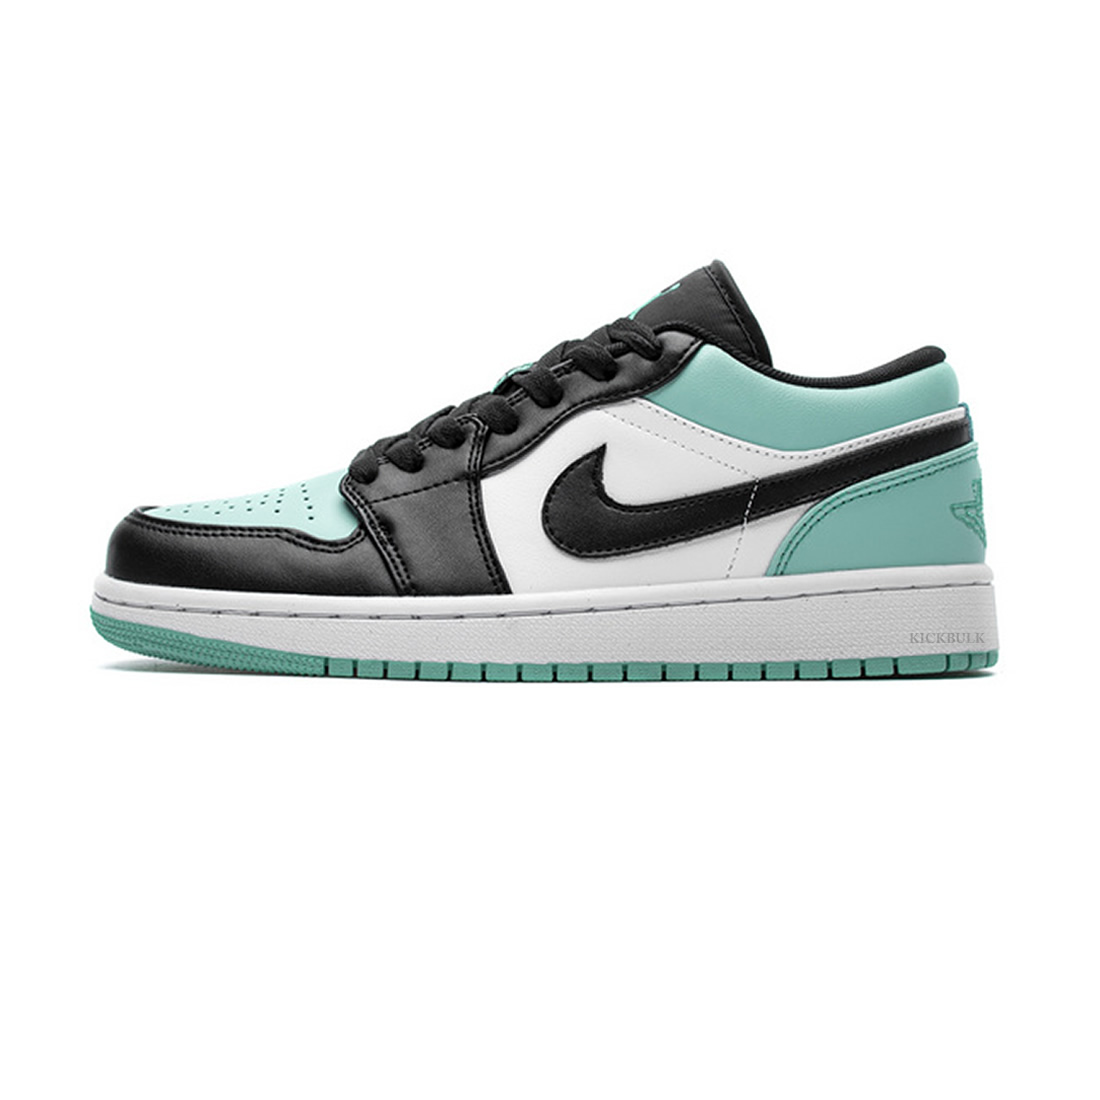 Nike Air Jordan 1 Low Emerald Toe 553558 117 1 - kickbulk.org